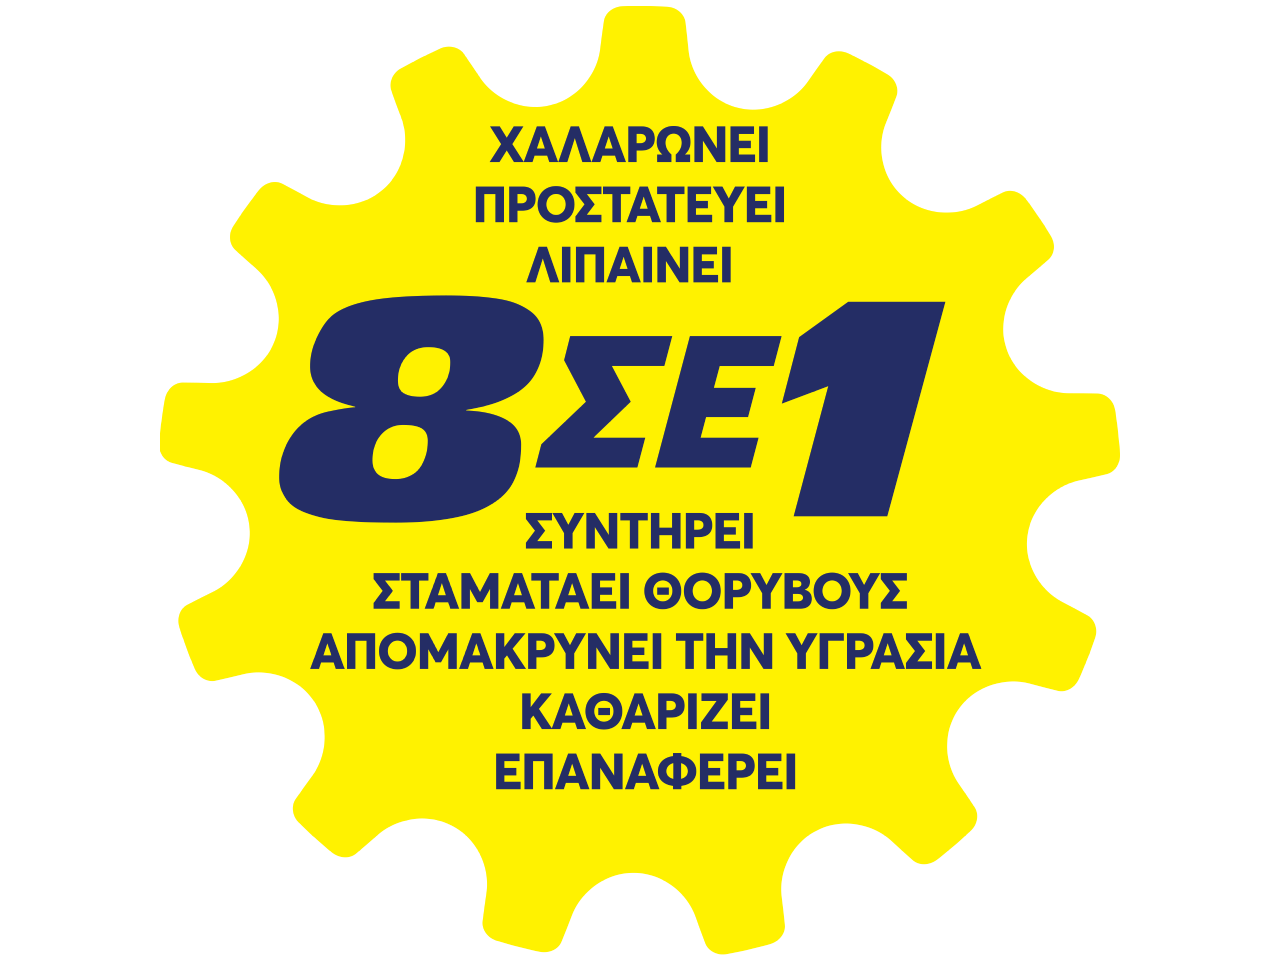 Bostik DIY Greece BA940 application 8in1